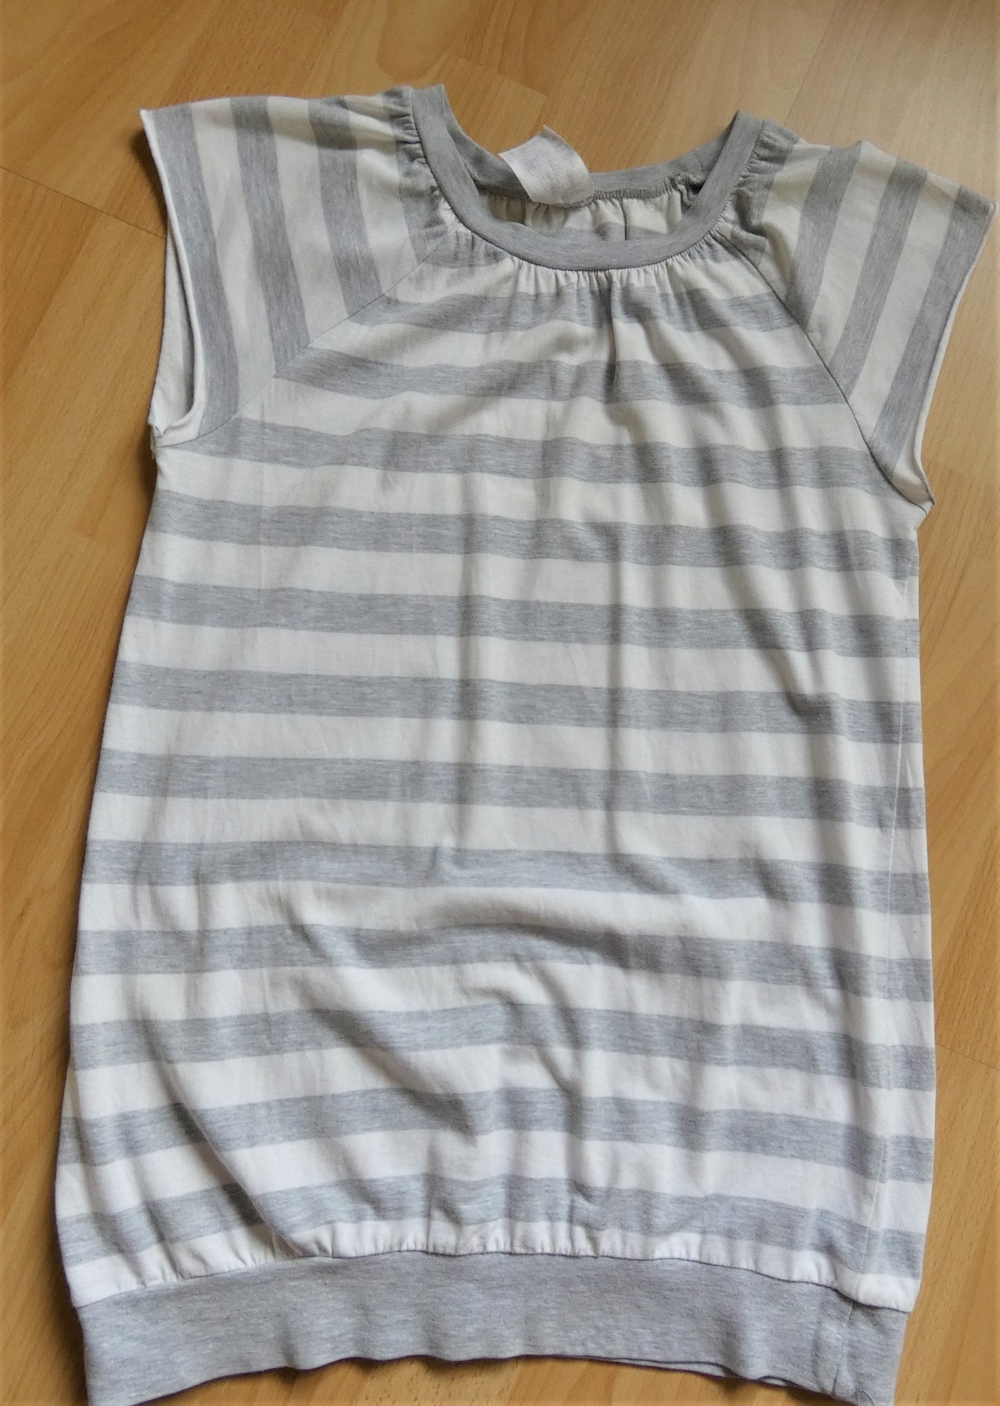 Longshirt / Kurzkleidchen Gr. 158/164 grau-weiß-gestreift H&M